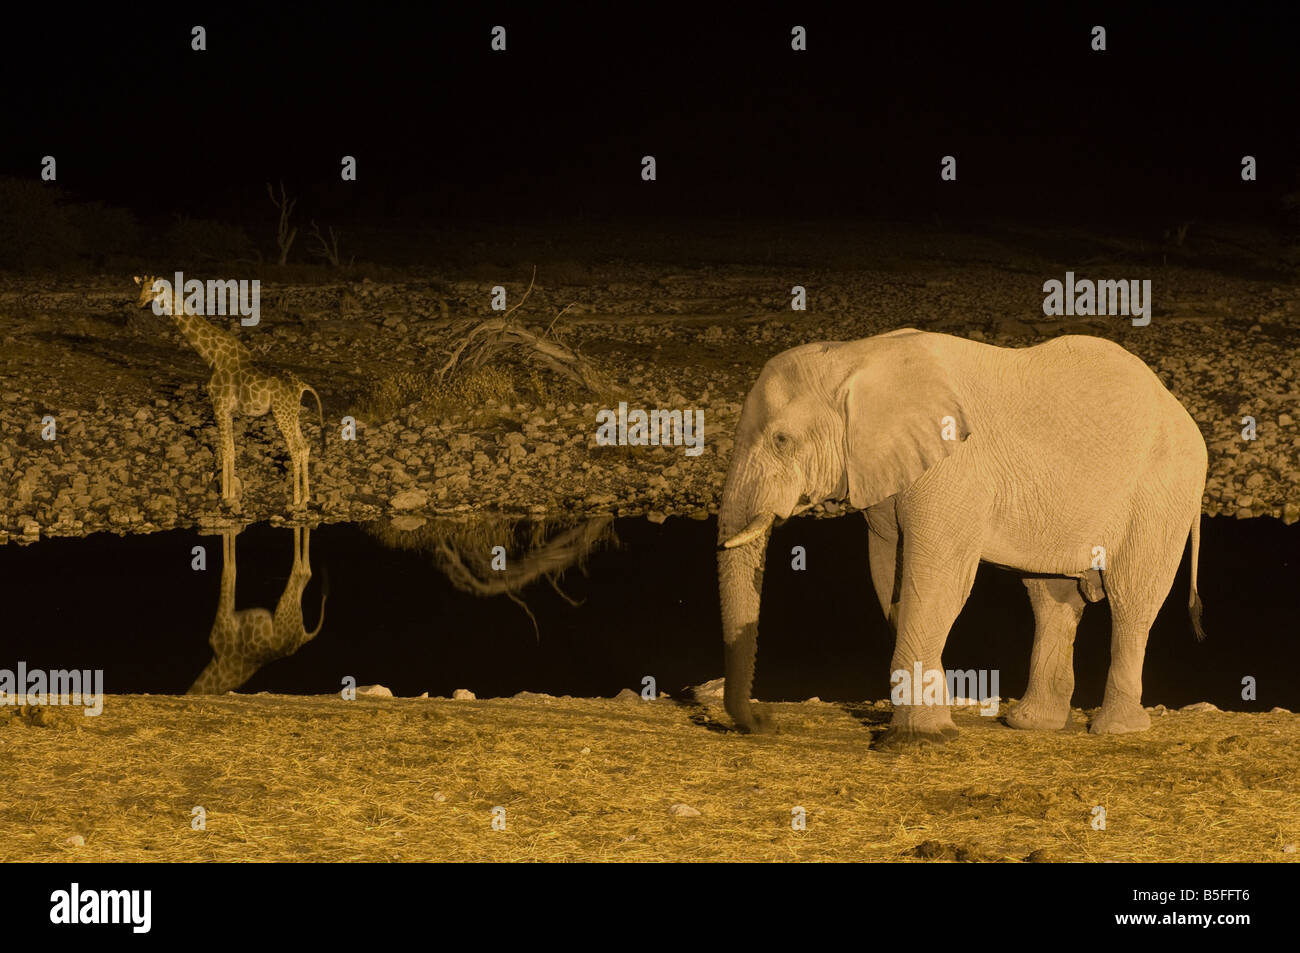 L'éléphant et girafe la visite d'un point d'eau dans la nuit d'Etosha Namibie Banque D'Images